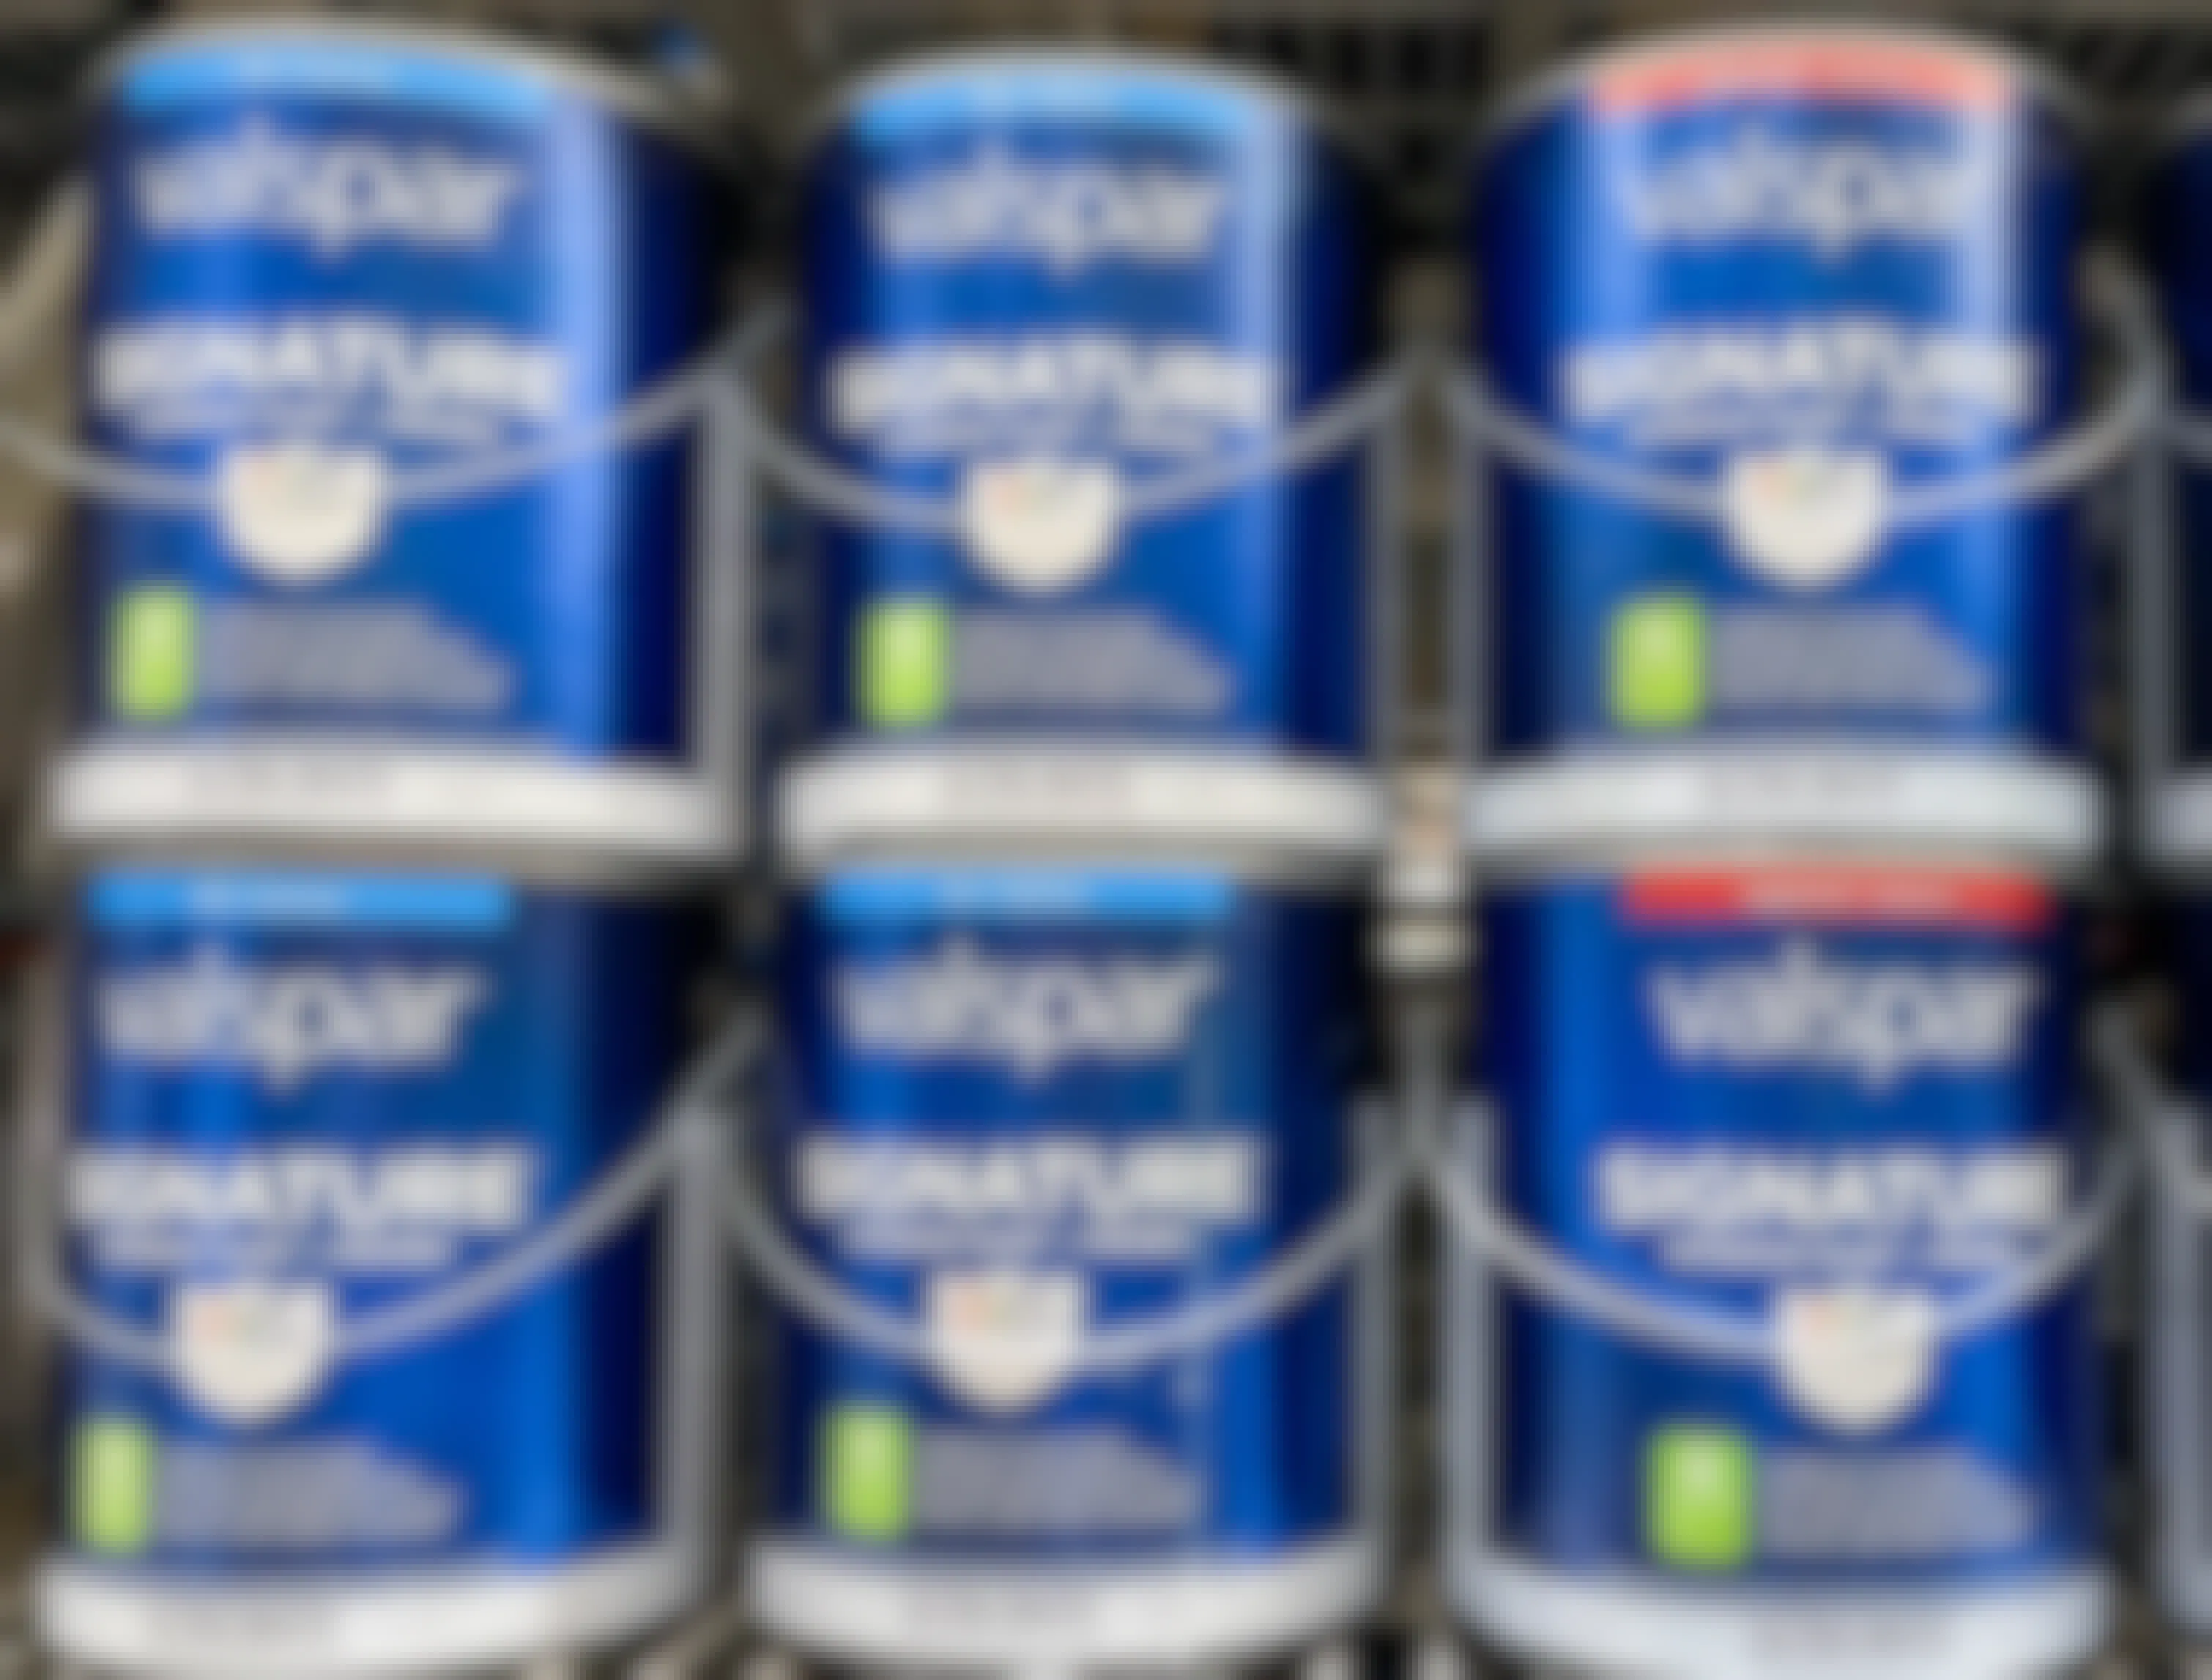 valspar paint cans on shelf 